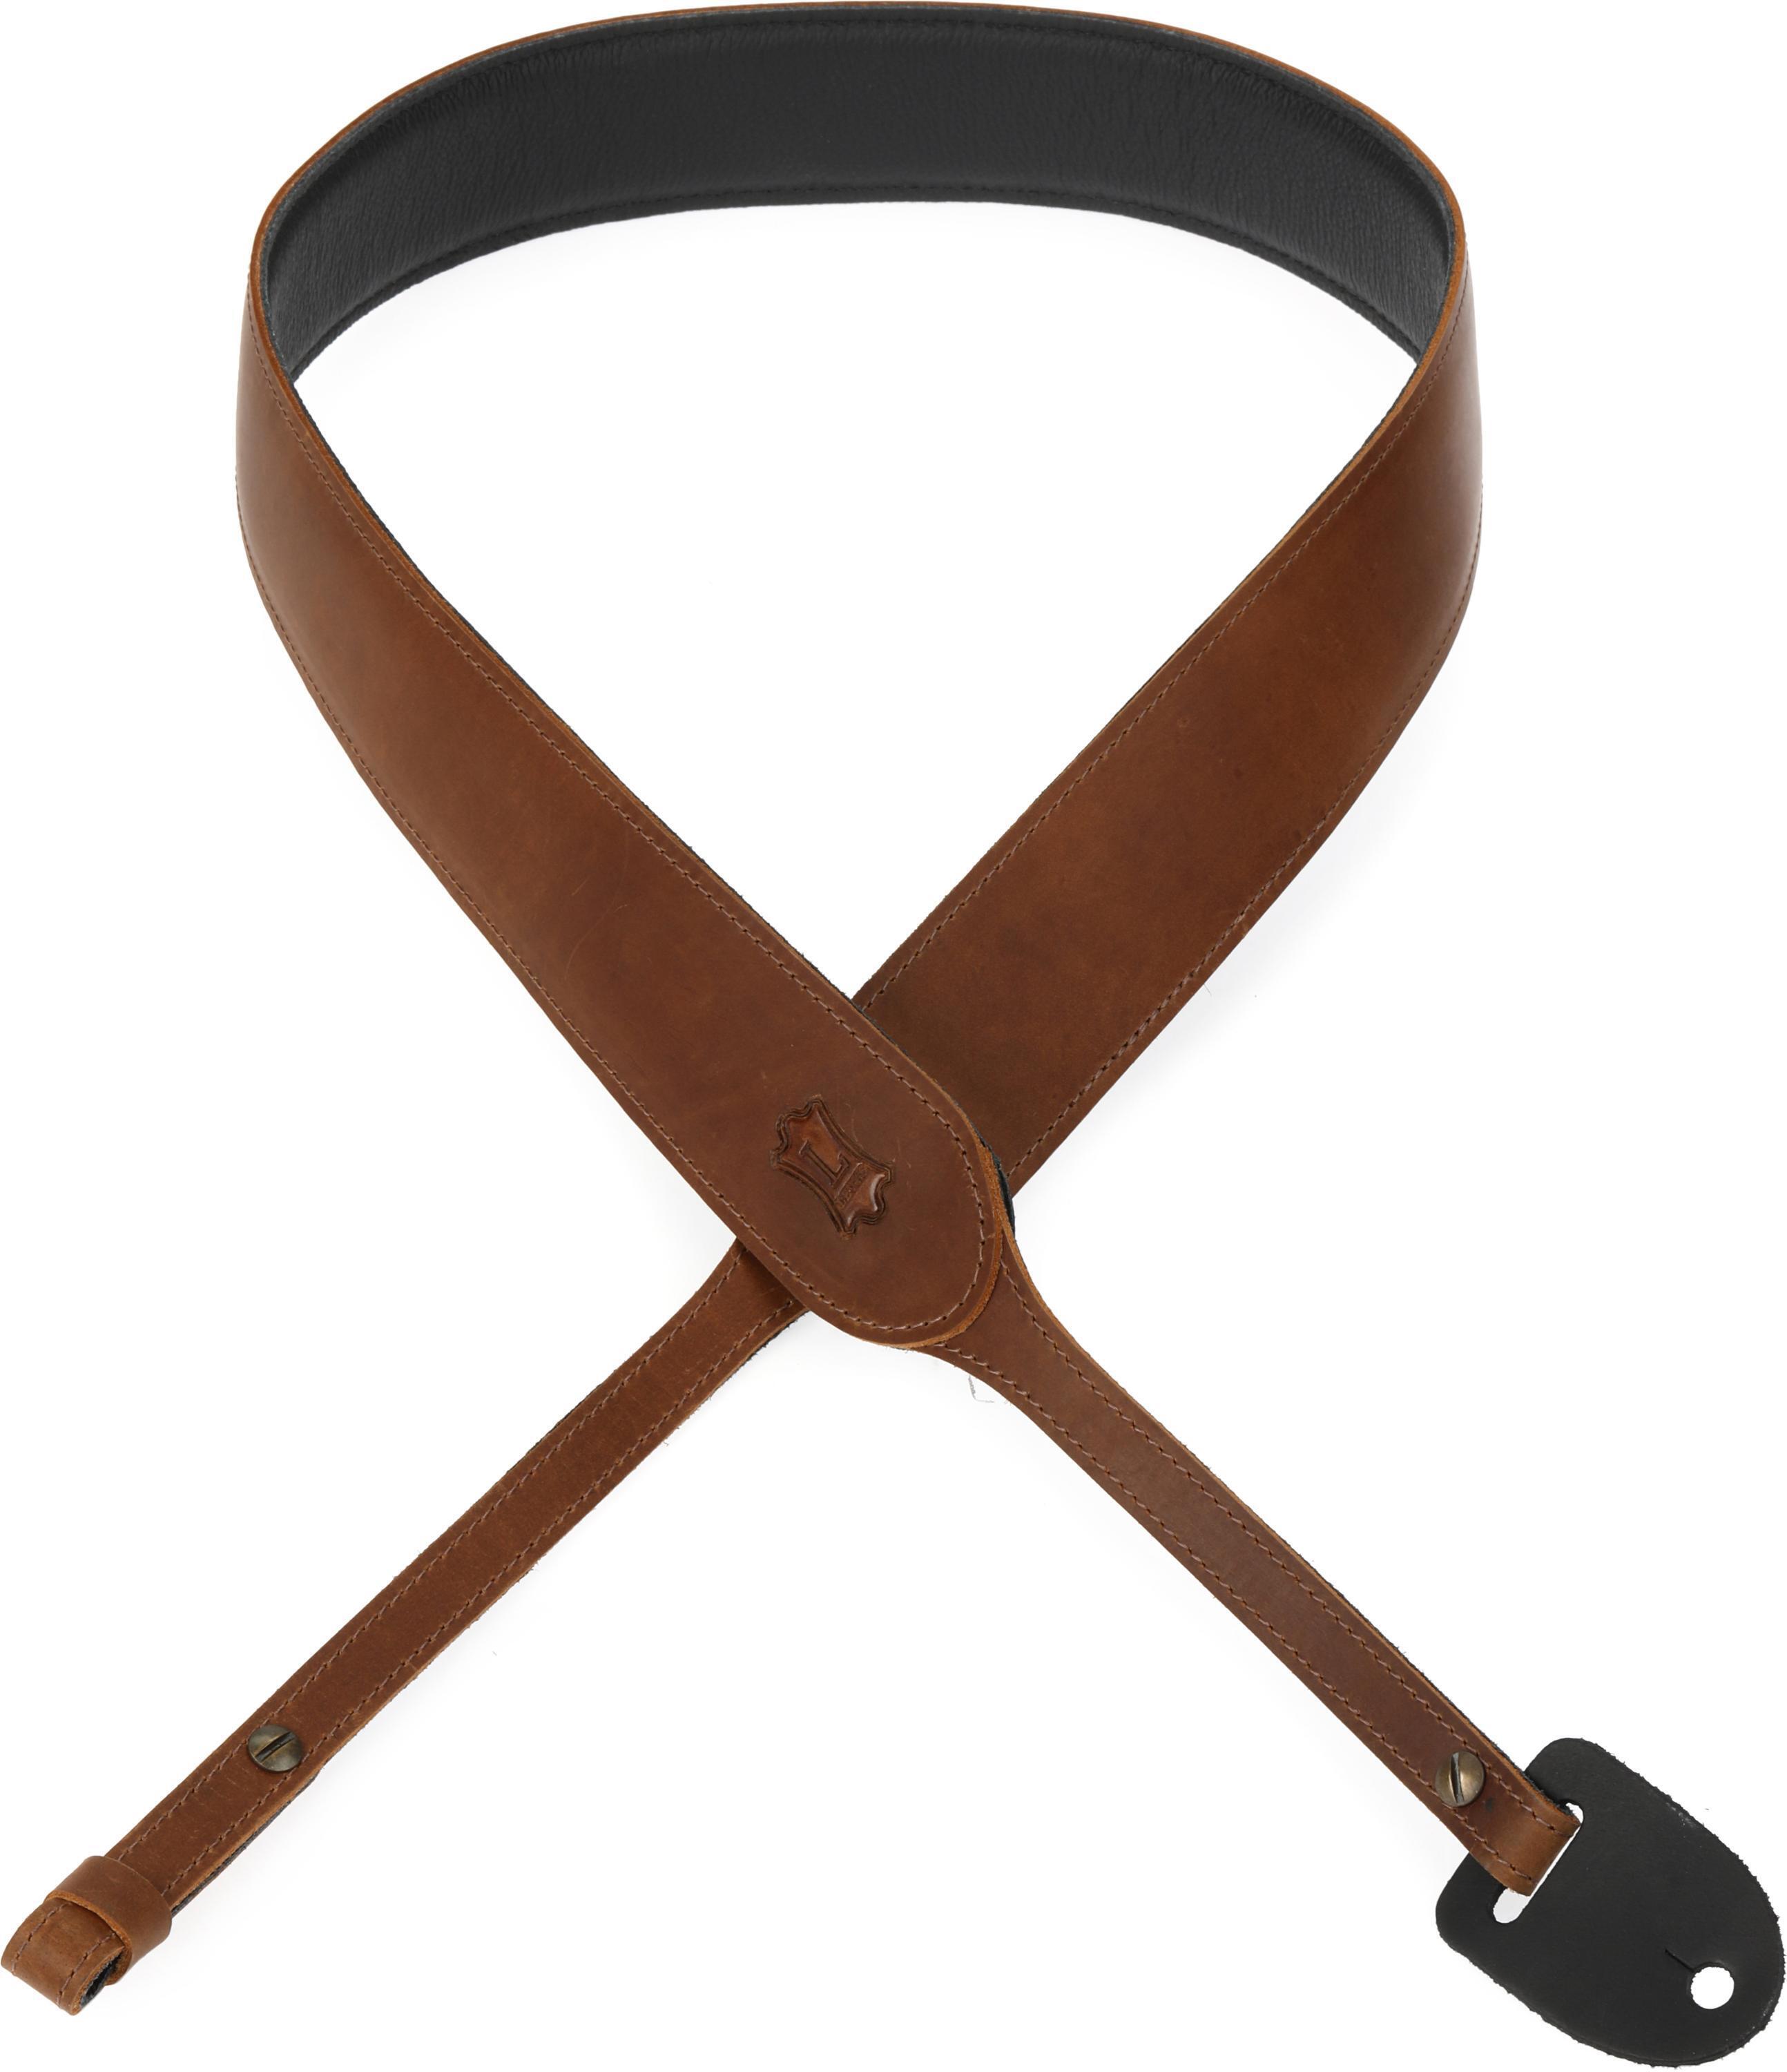 Levy's PM14 2.5 Geuine Leather Banjo Strap - Dark Brown